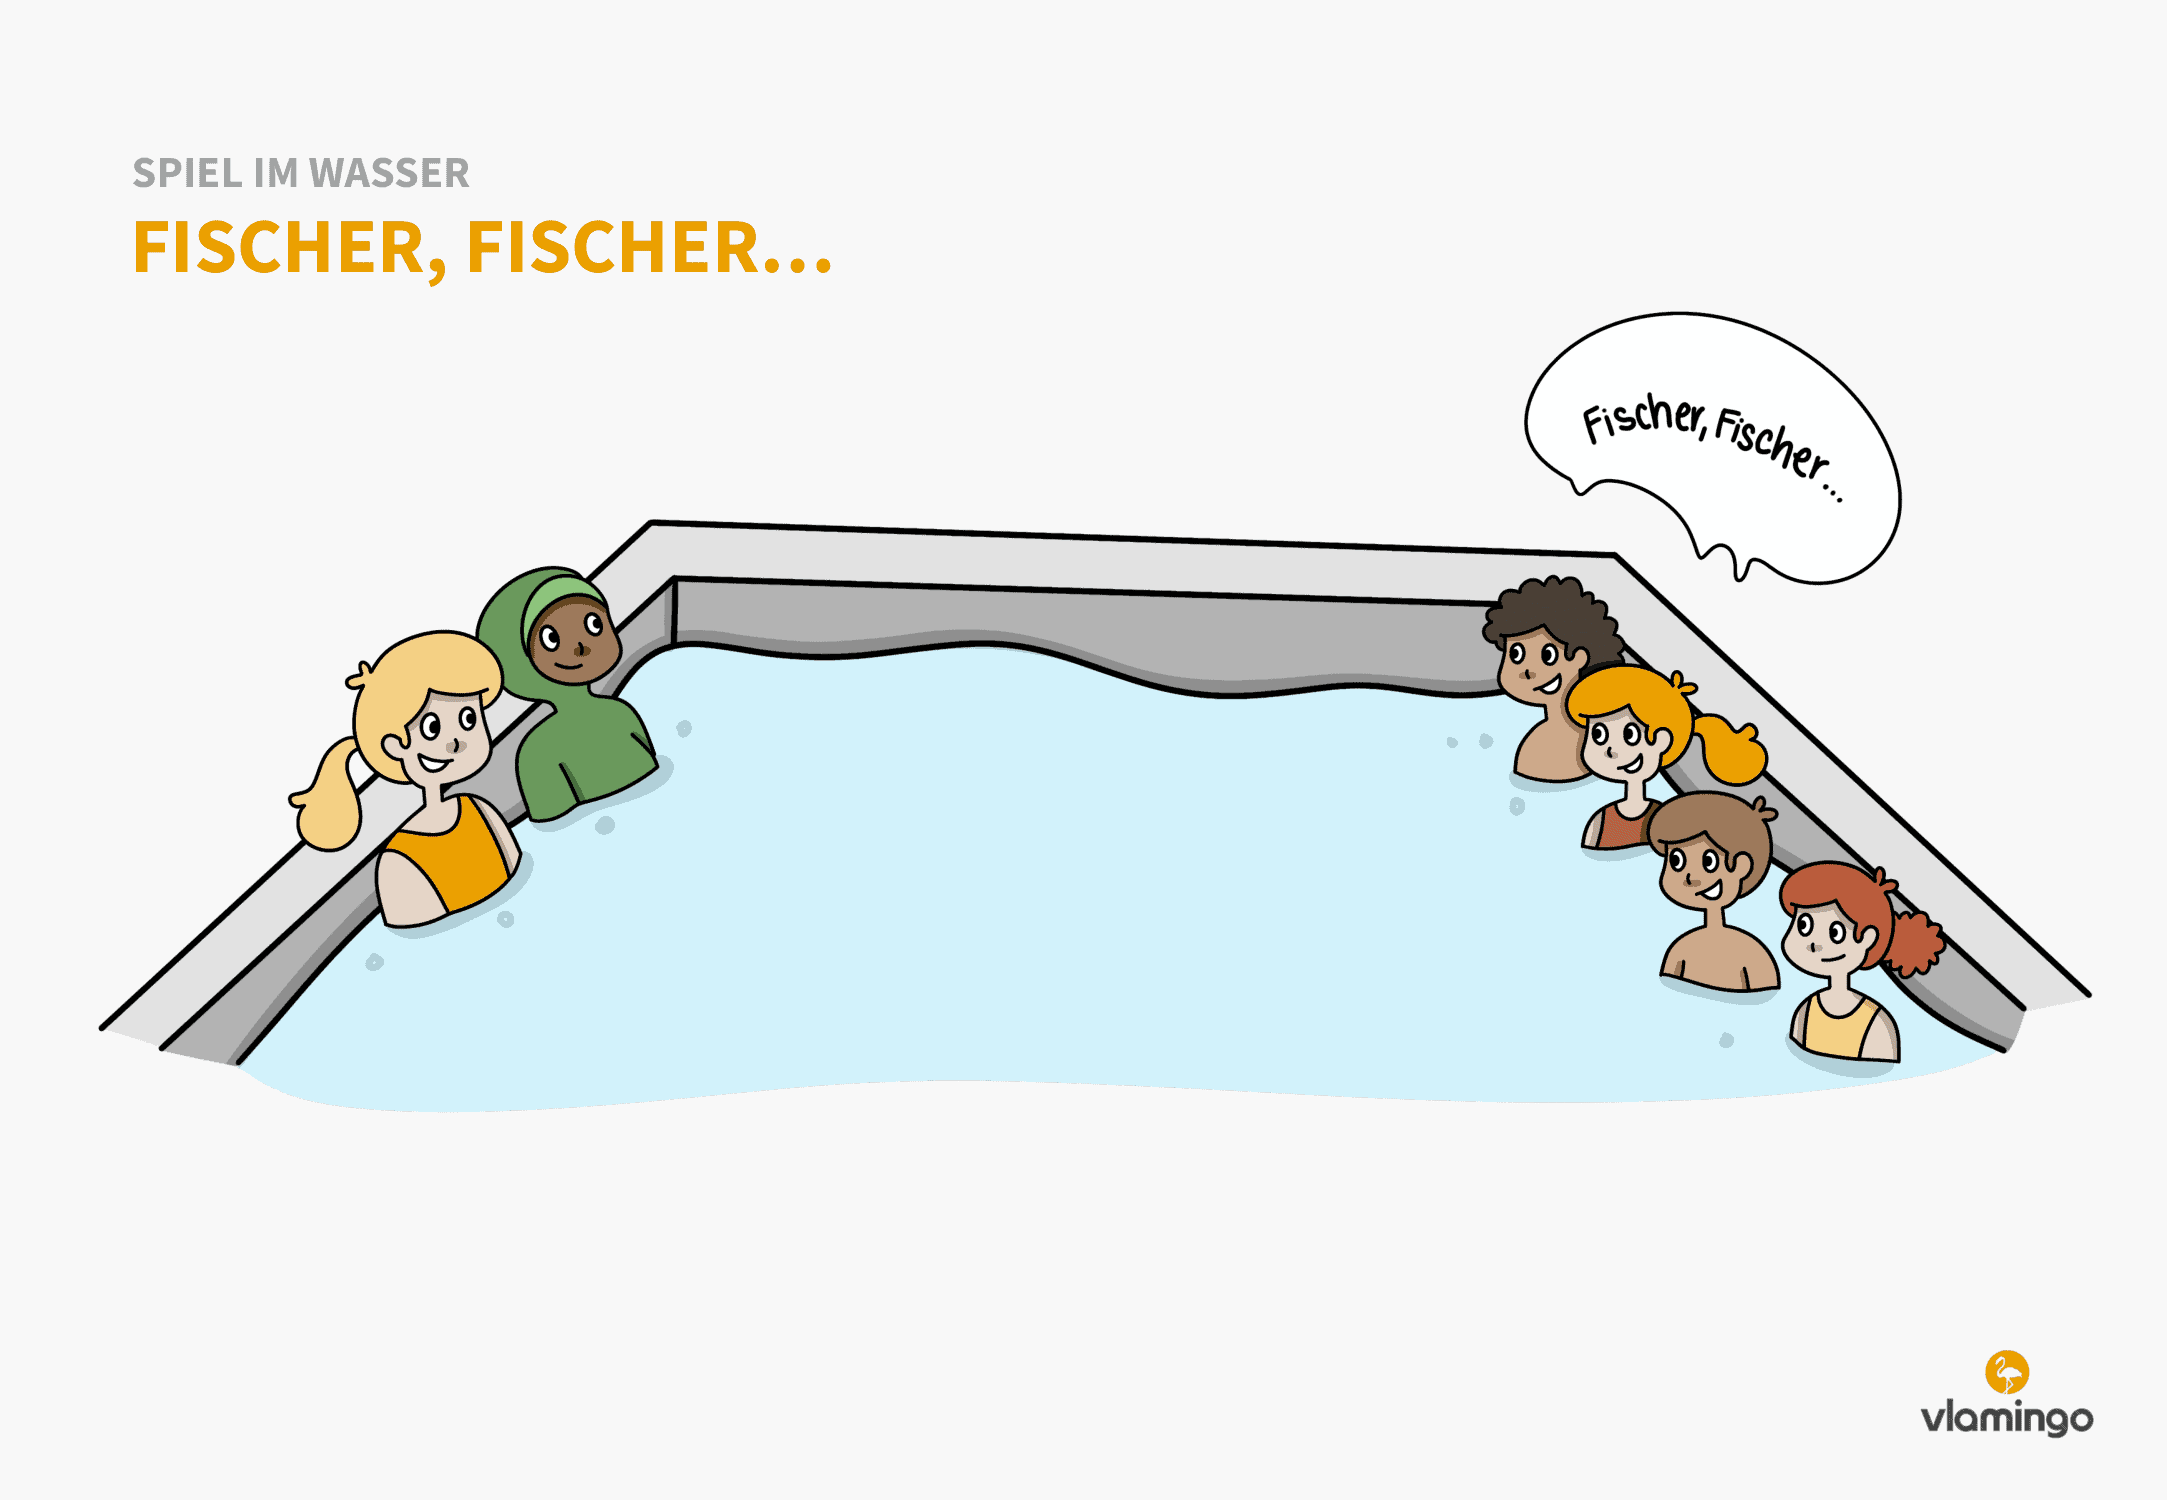 Fischer, Fischer... - Spiel im Wasser - Schwimmspiel